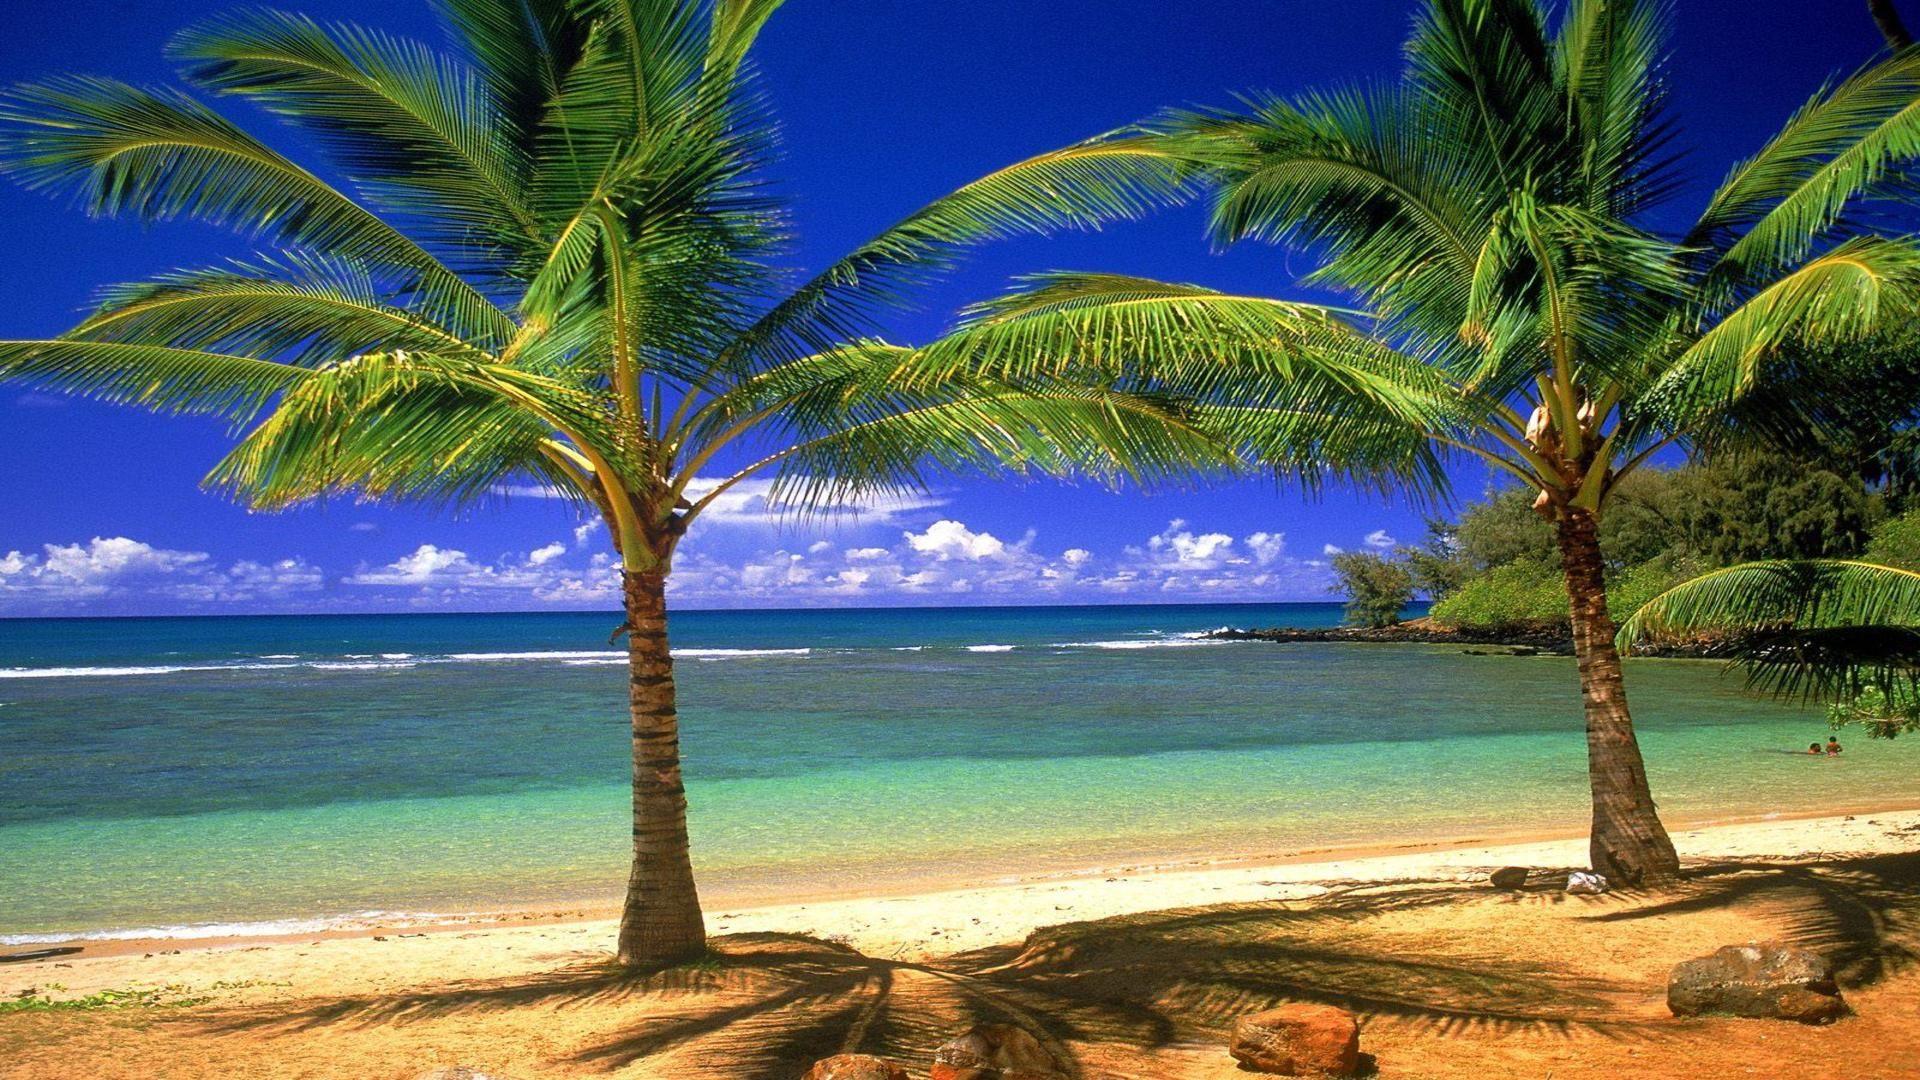 والپیپر با کیفیت جاذبه طبیعی در هاوایی با ساحل طلایی و آبی های زیبا